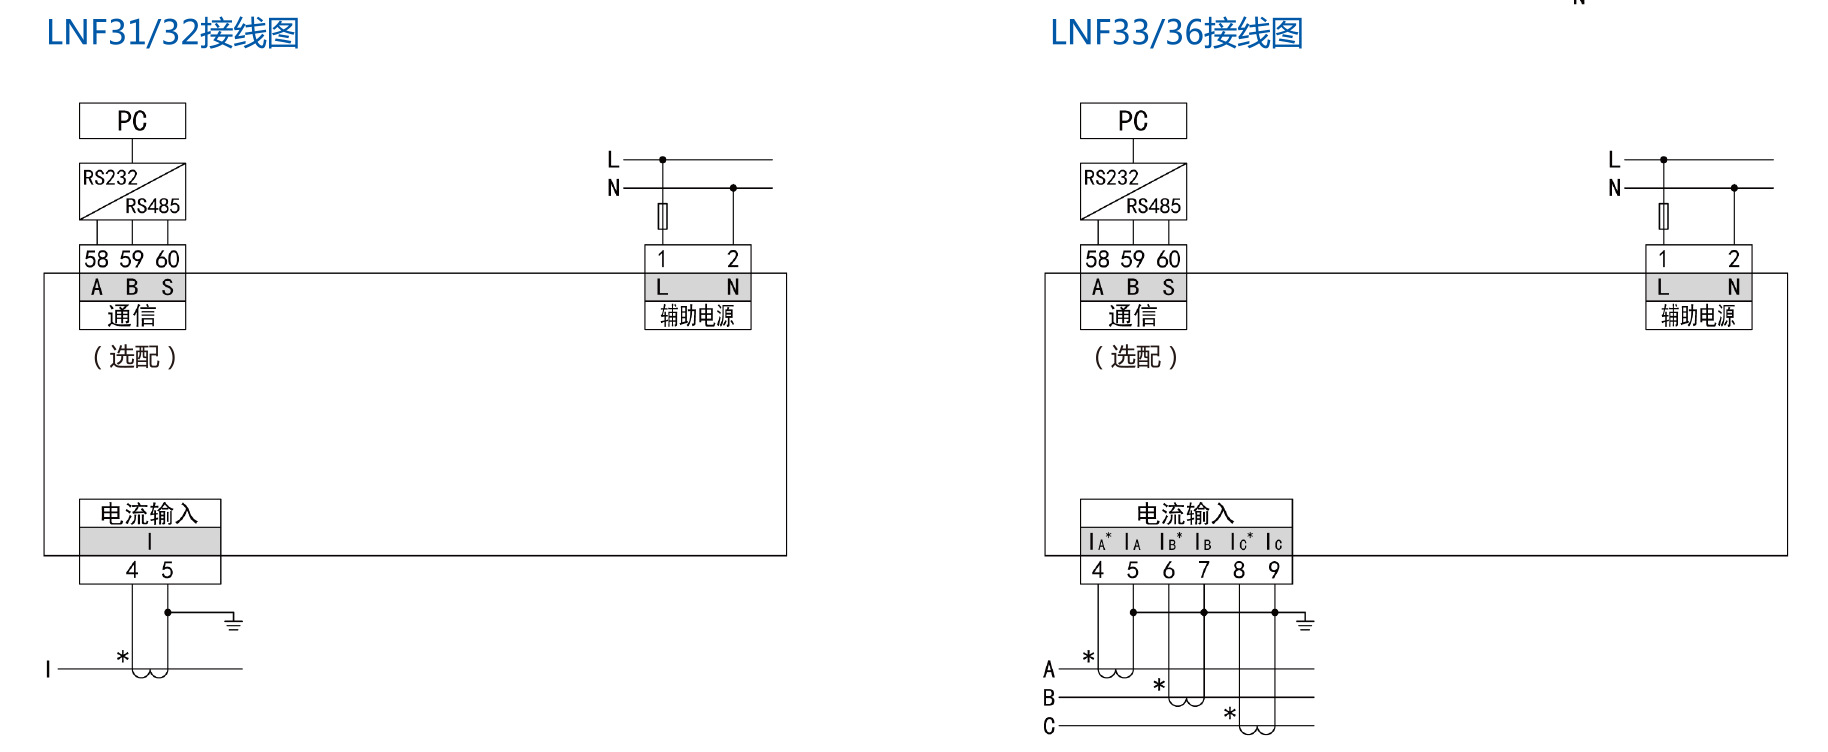 LNF33领菲系列可选通讯三相电流智能电力仪表斯菲尔厂家生产 领菲,斯菲尔,智能电力仪表,三相电流,厂家直销